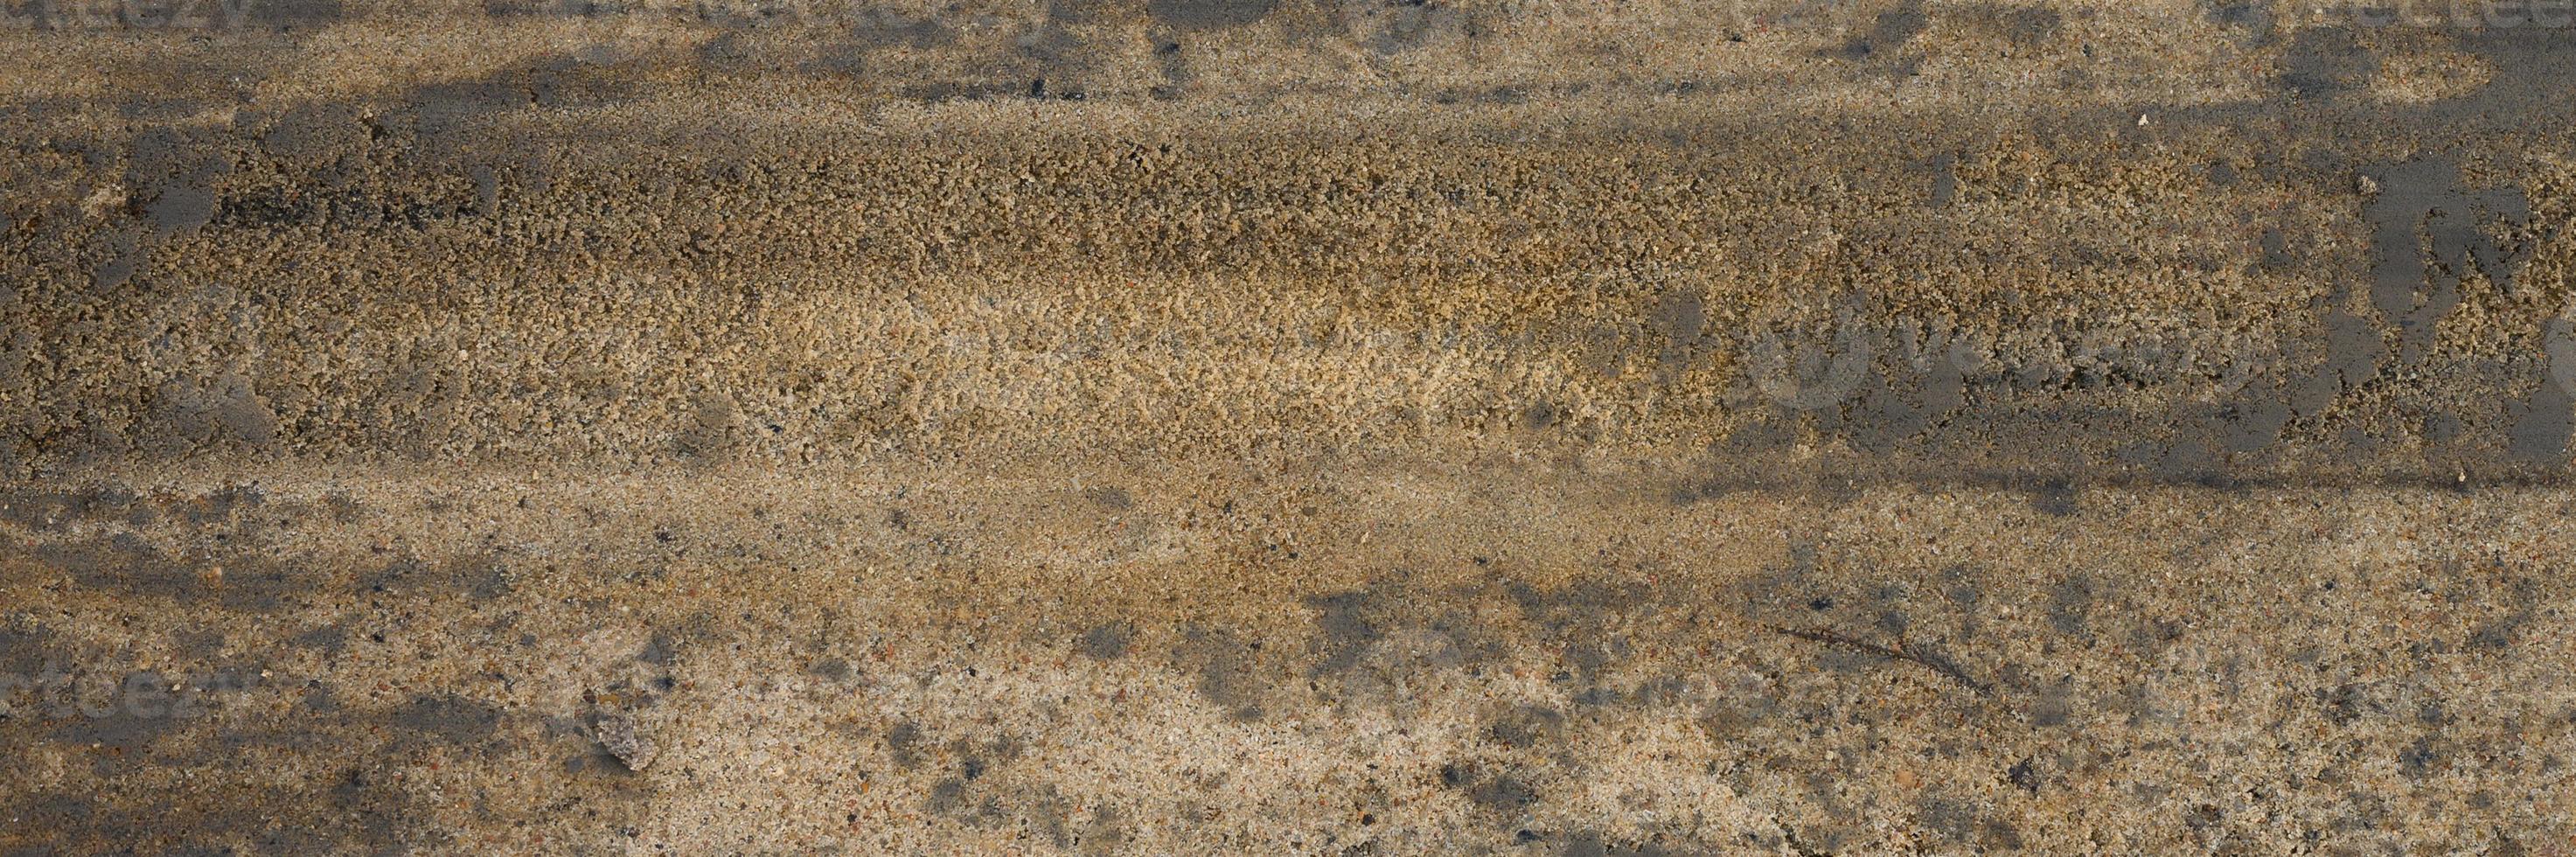 Hintergrundtextur von der glatten Oberfläche des Holzsandes foto